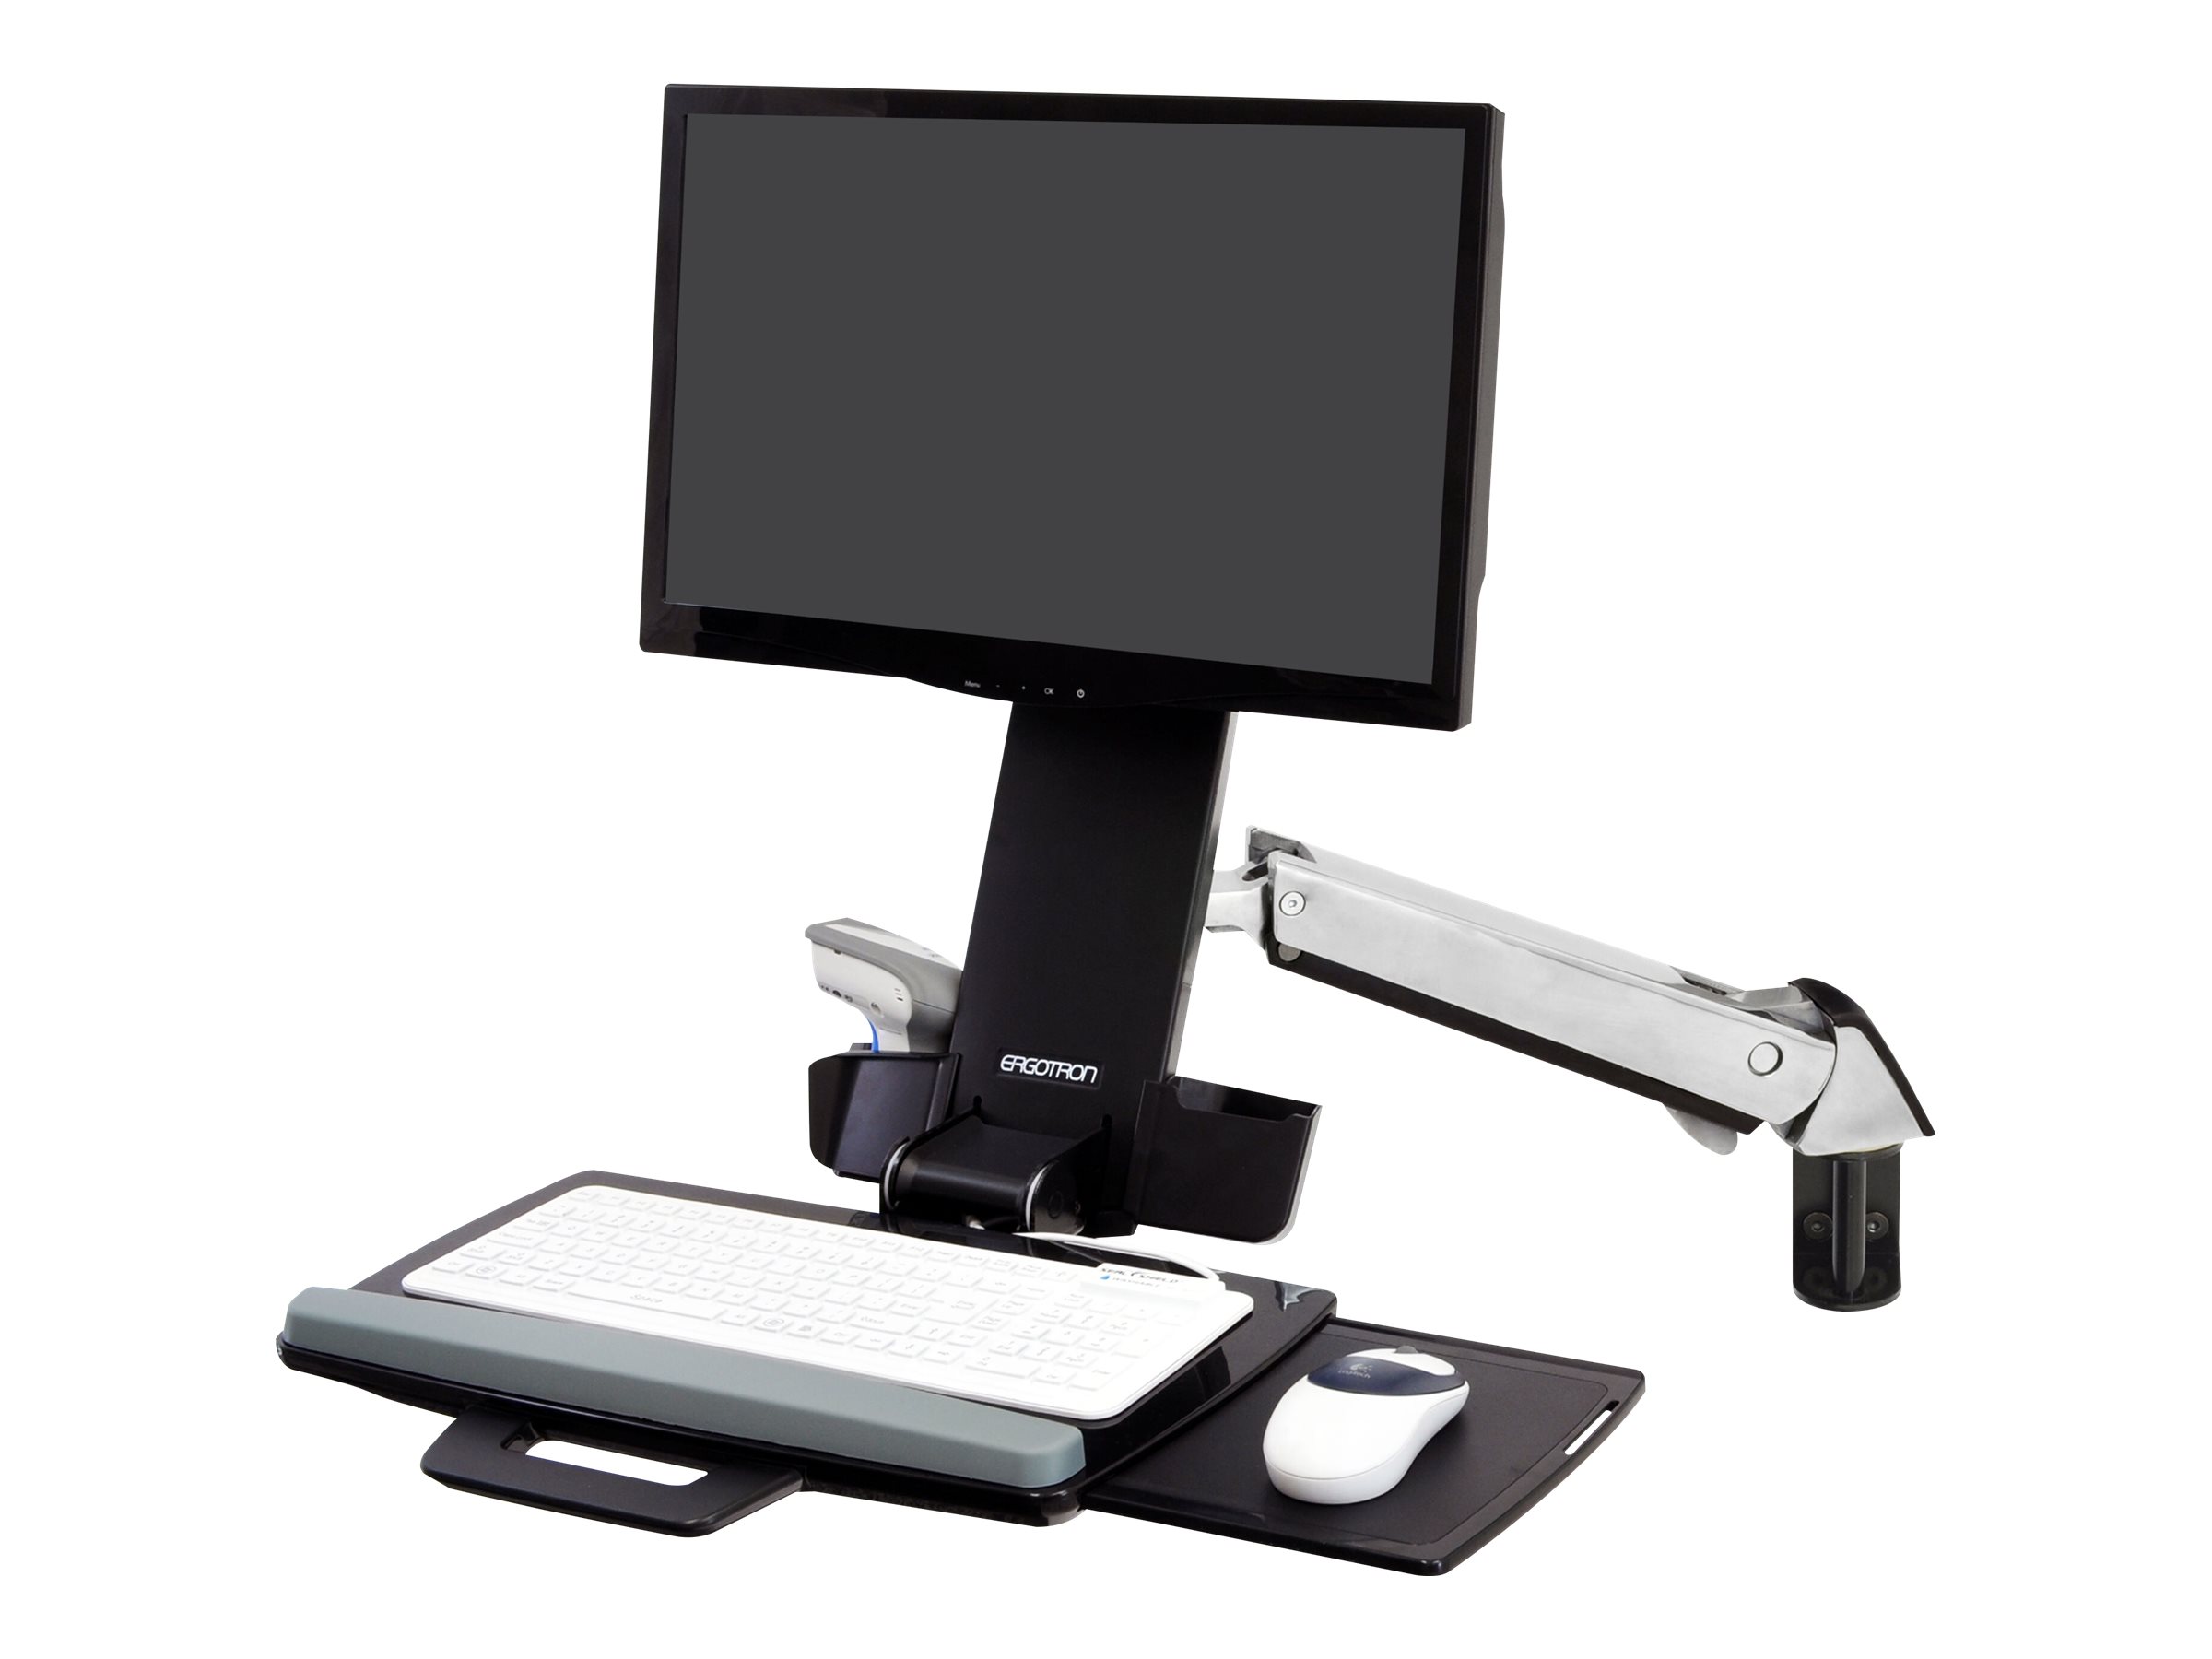 Ergotron - Kit de montage (repose-poignets, kit de support de montage de piste, support ajustable en hauteur, plateau de clavier avec plateau de souris gauche/droite, support pour scanner de code barres et souris, bras combiné) - pour écran LCD/équipement PC - blanc - Taille d'écran : jusqu'à 24 pouces - 45-266-026 - Accessoires pour scanner